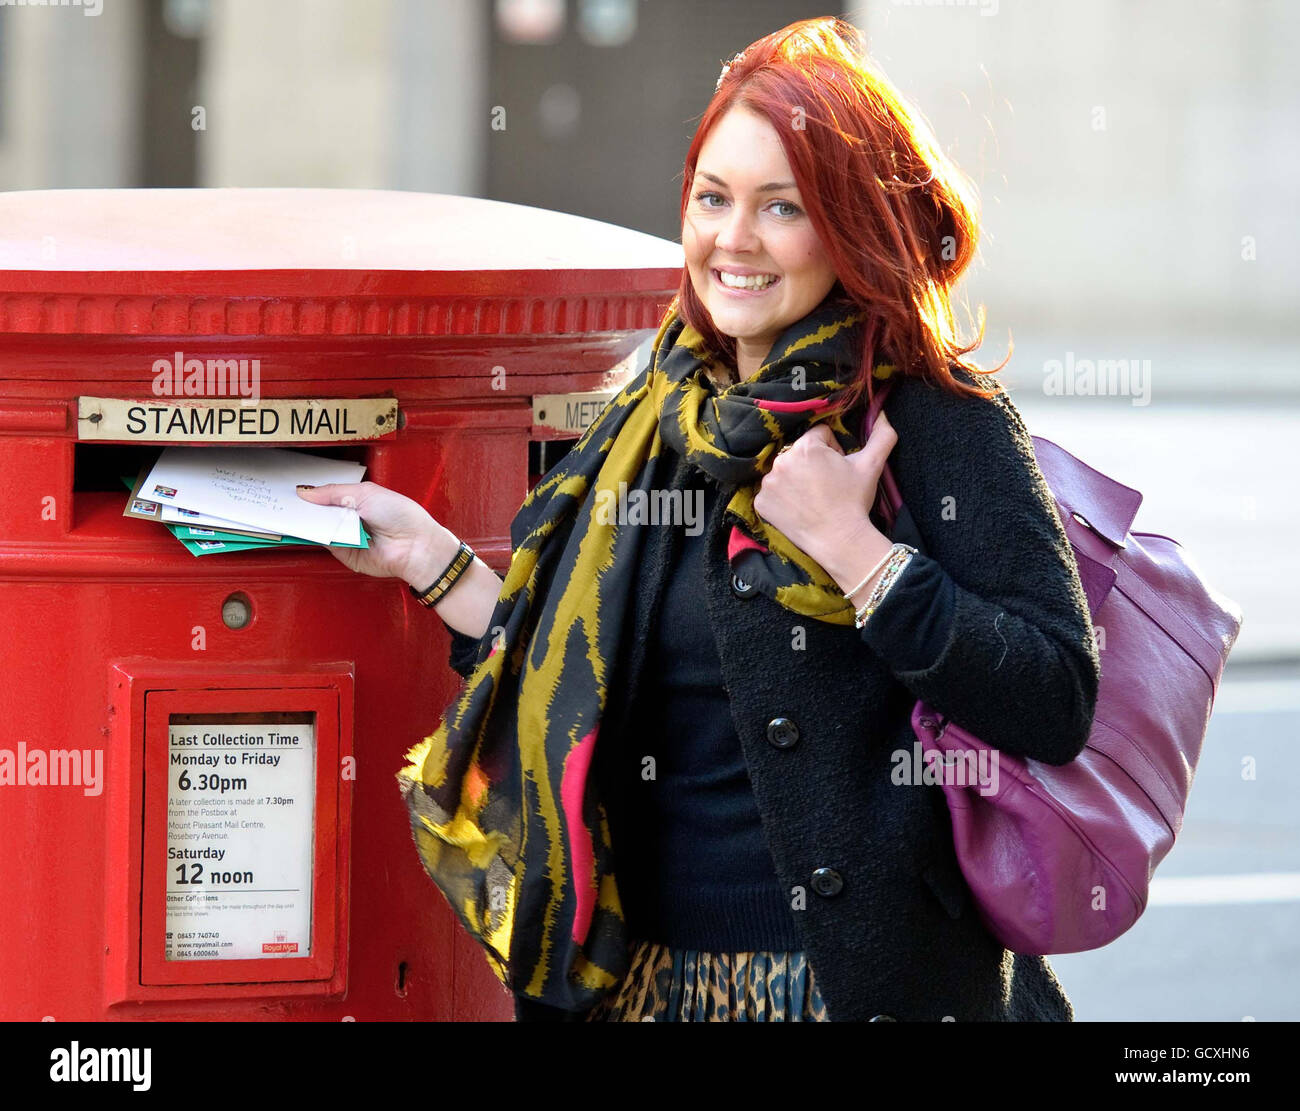 L'attrice Lacey Turner promuove le ultime date di pubblicazione consigliate della Royal Mail del 18 dicembre per la posta di seconda classe, e del 21 dicembre per la posta di prima classe, nel centro di Londra. Foto Stock